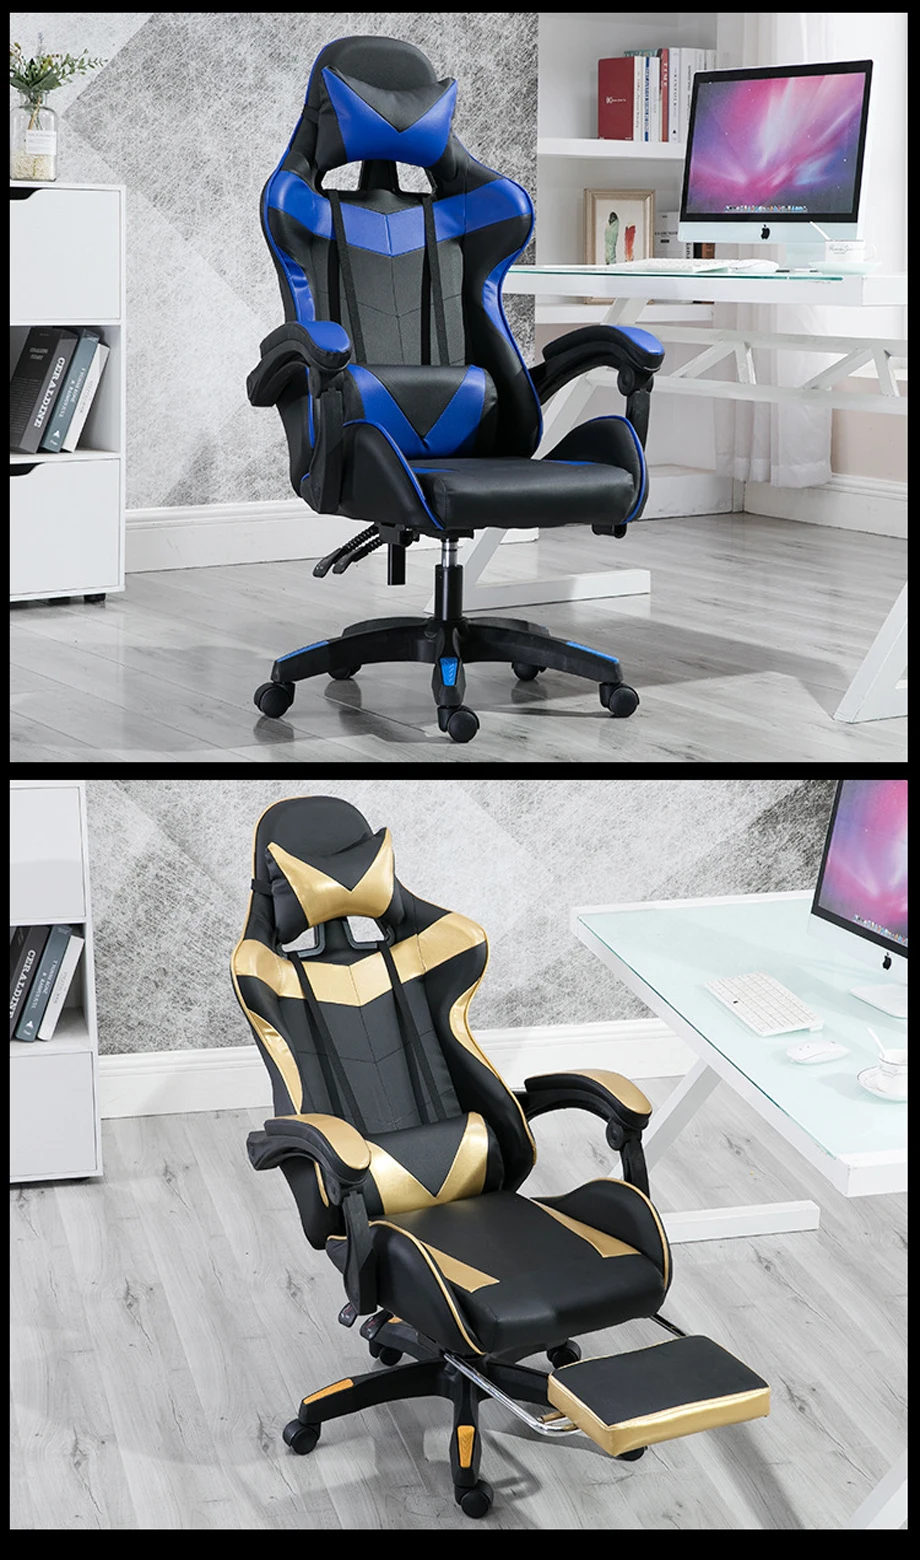 Е-спортивное кресло wcg игровое сиденье интернет кафе конкурентоспособное гоночное кресло офисное компьютерное кресло